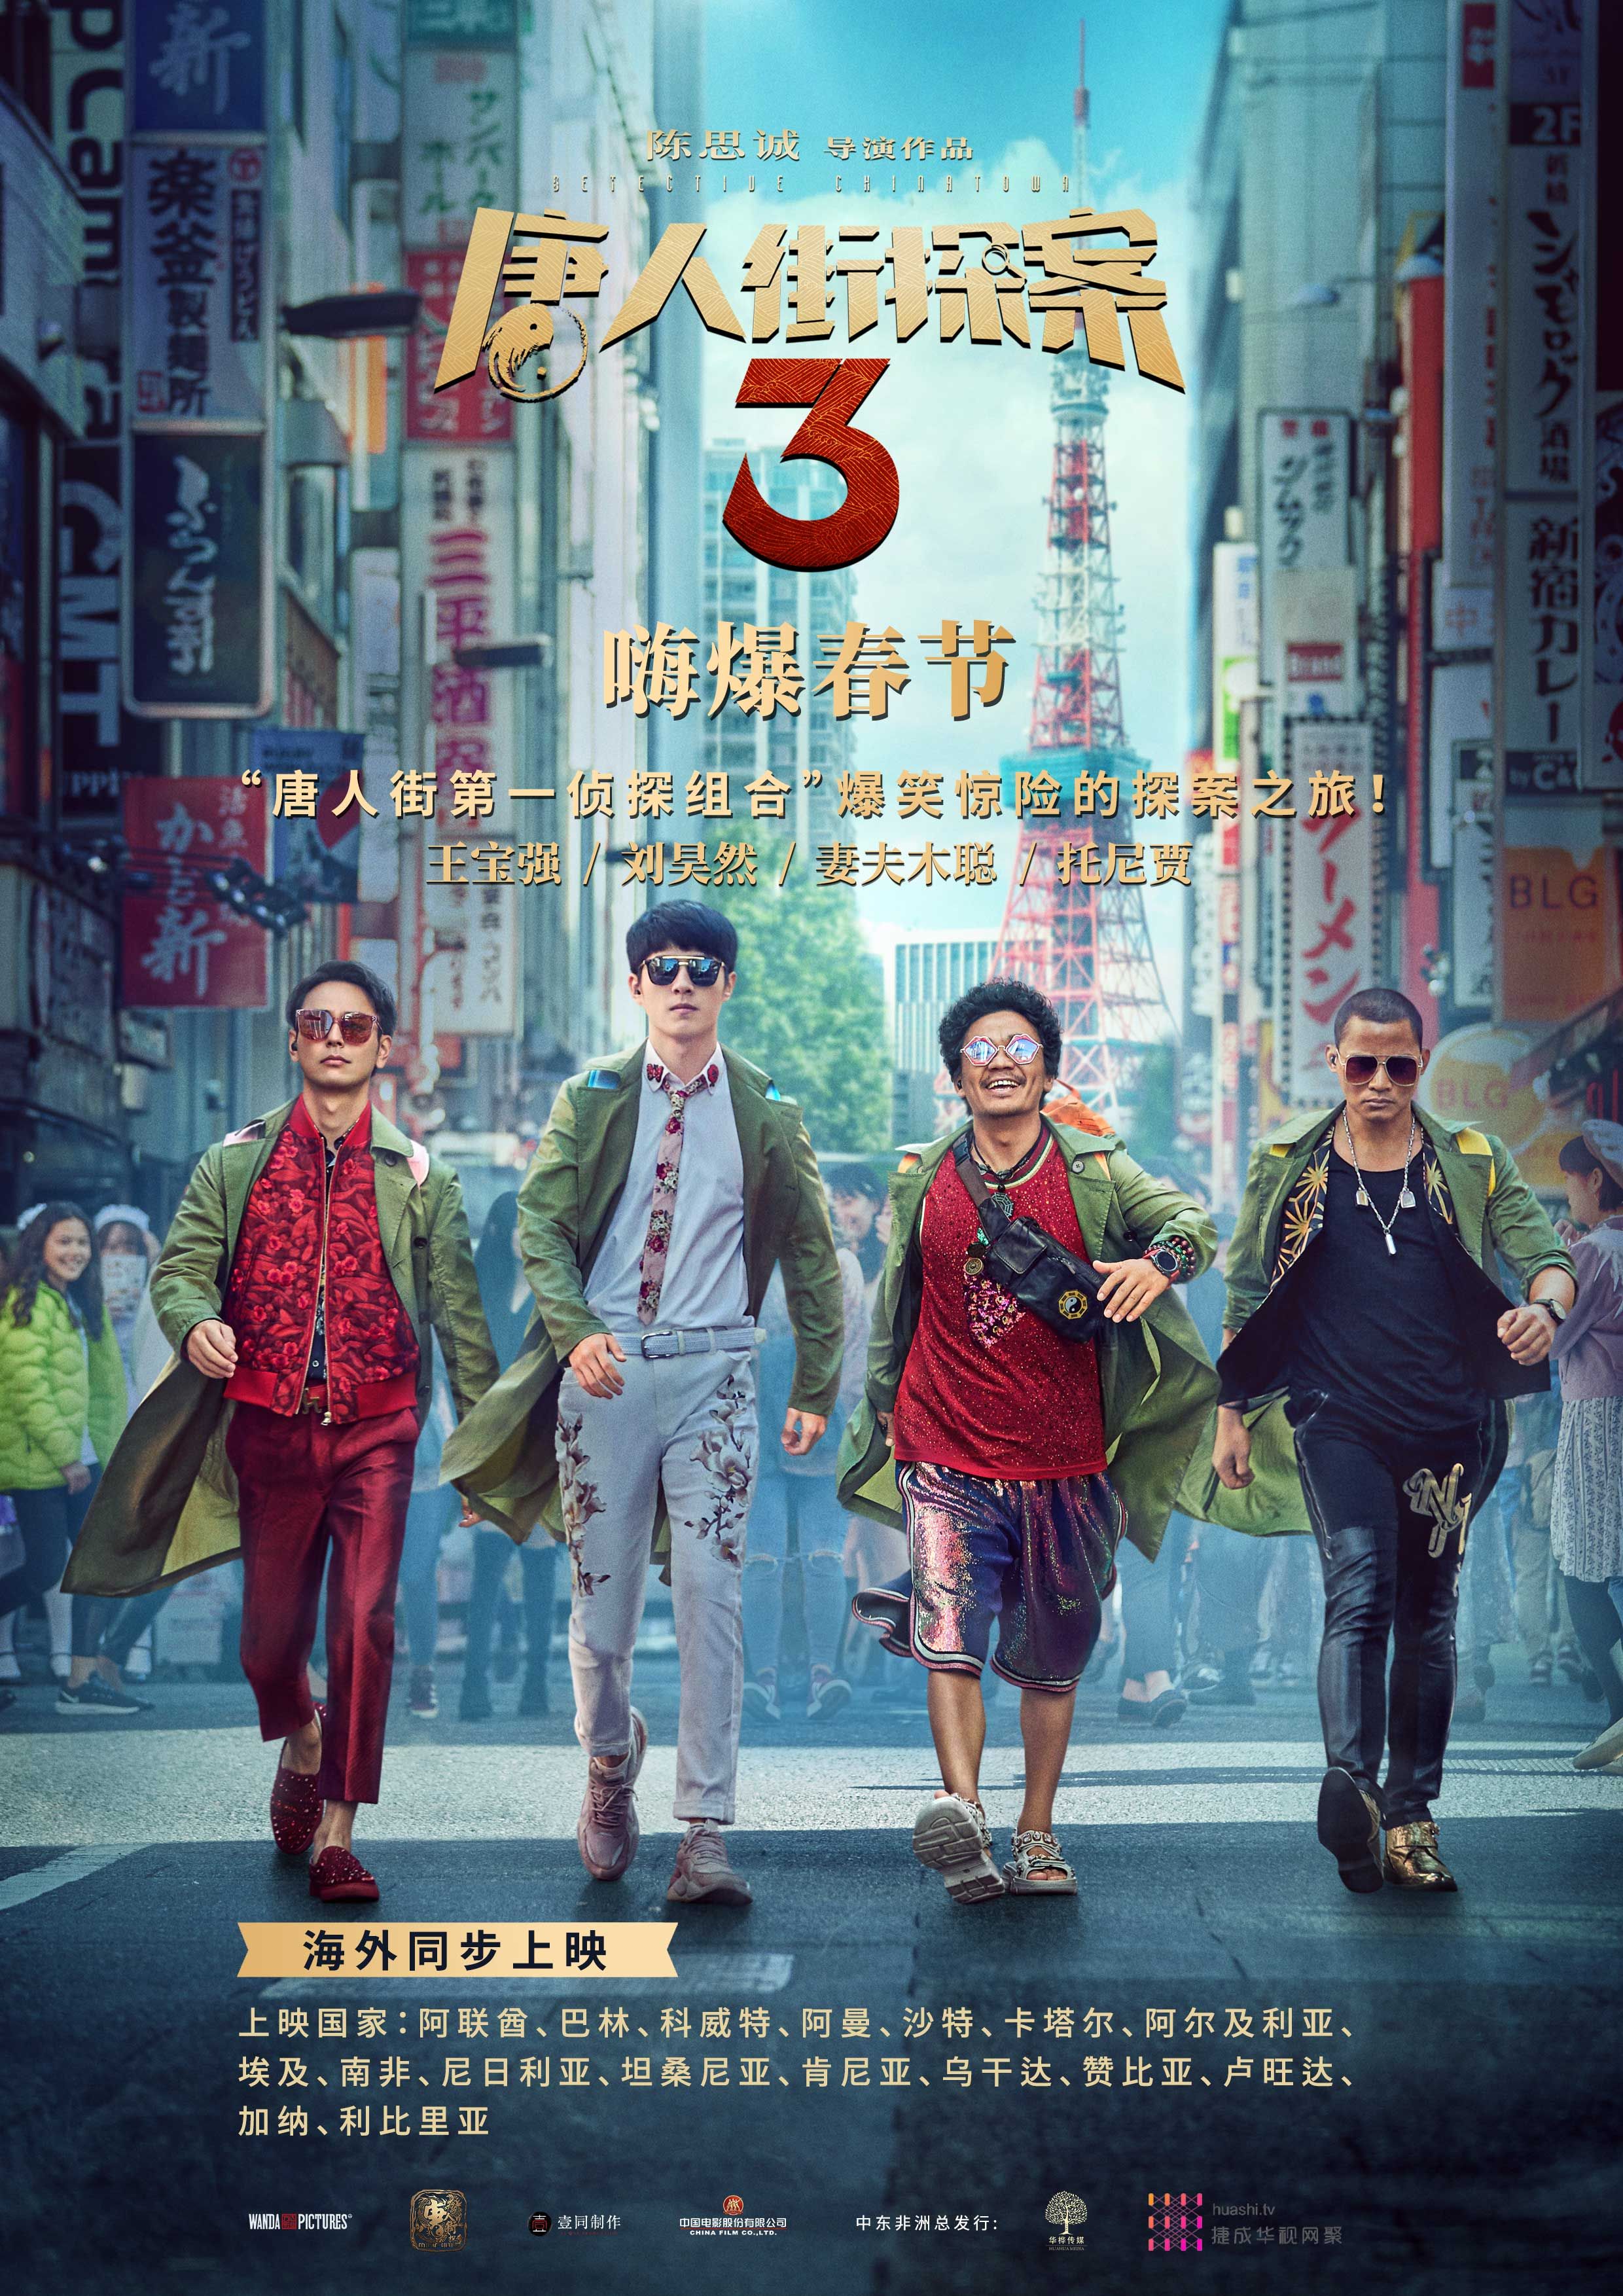 《唐人街探案3》海报-带海外同步上映国家名称